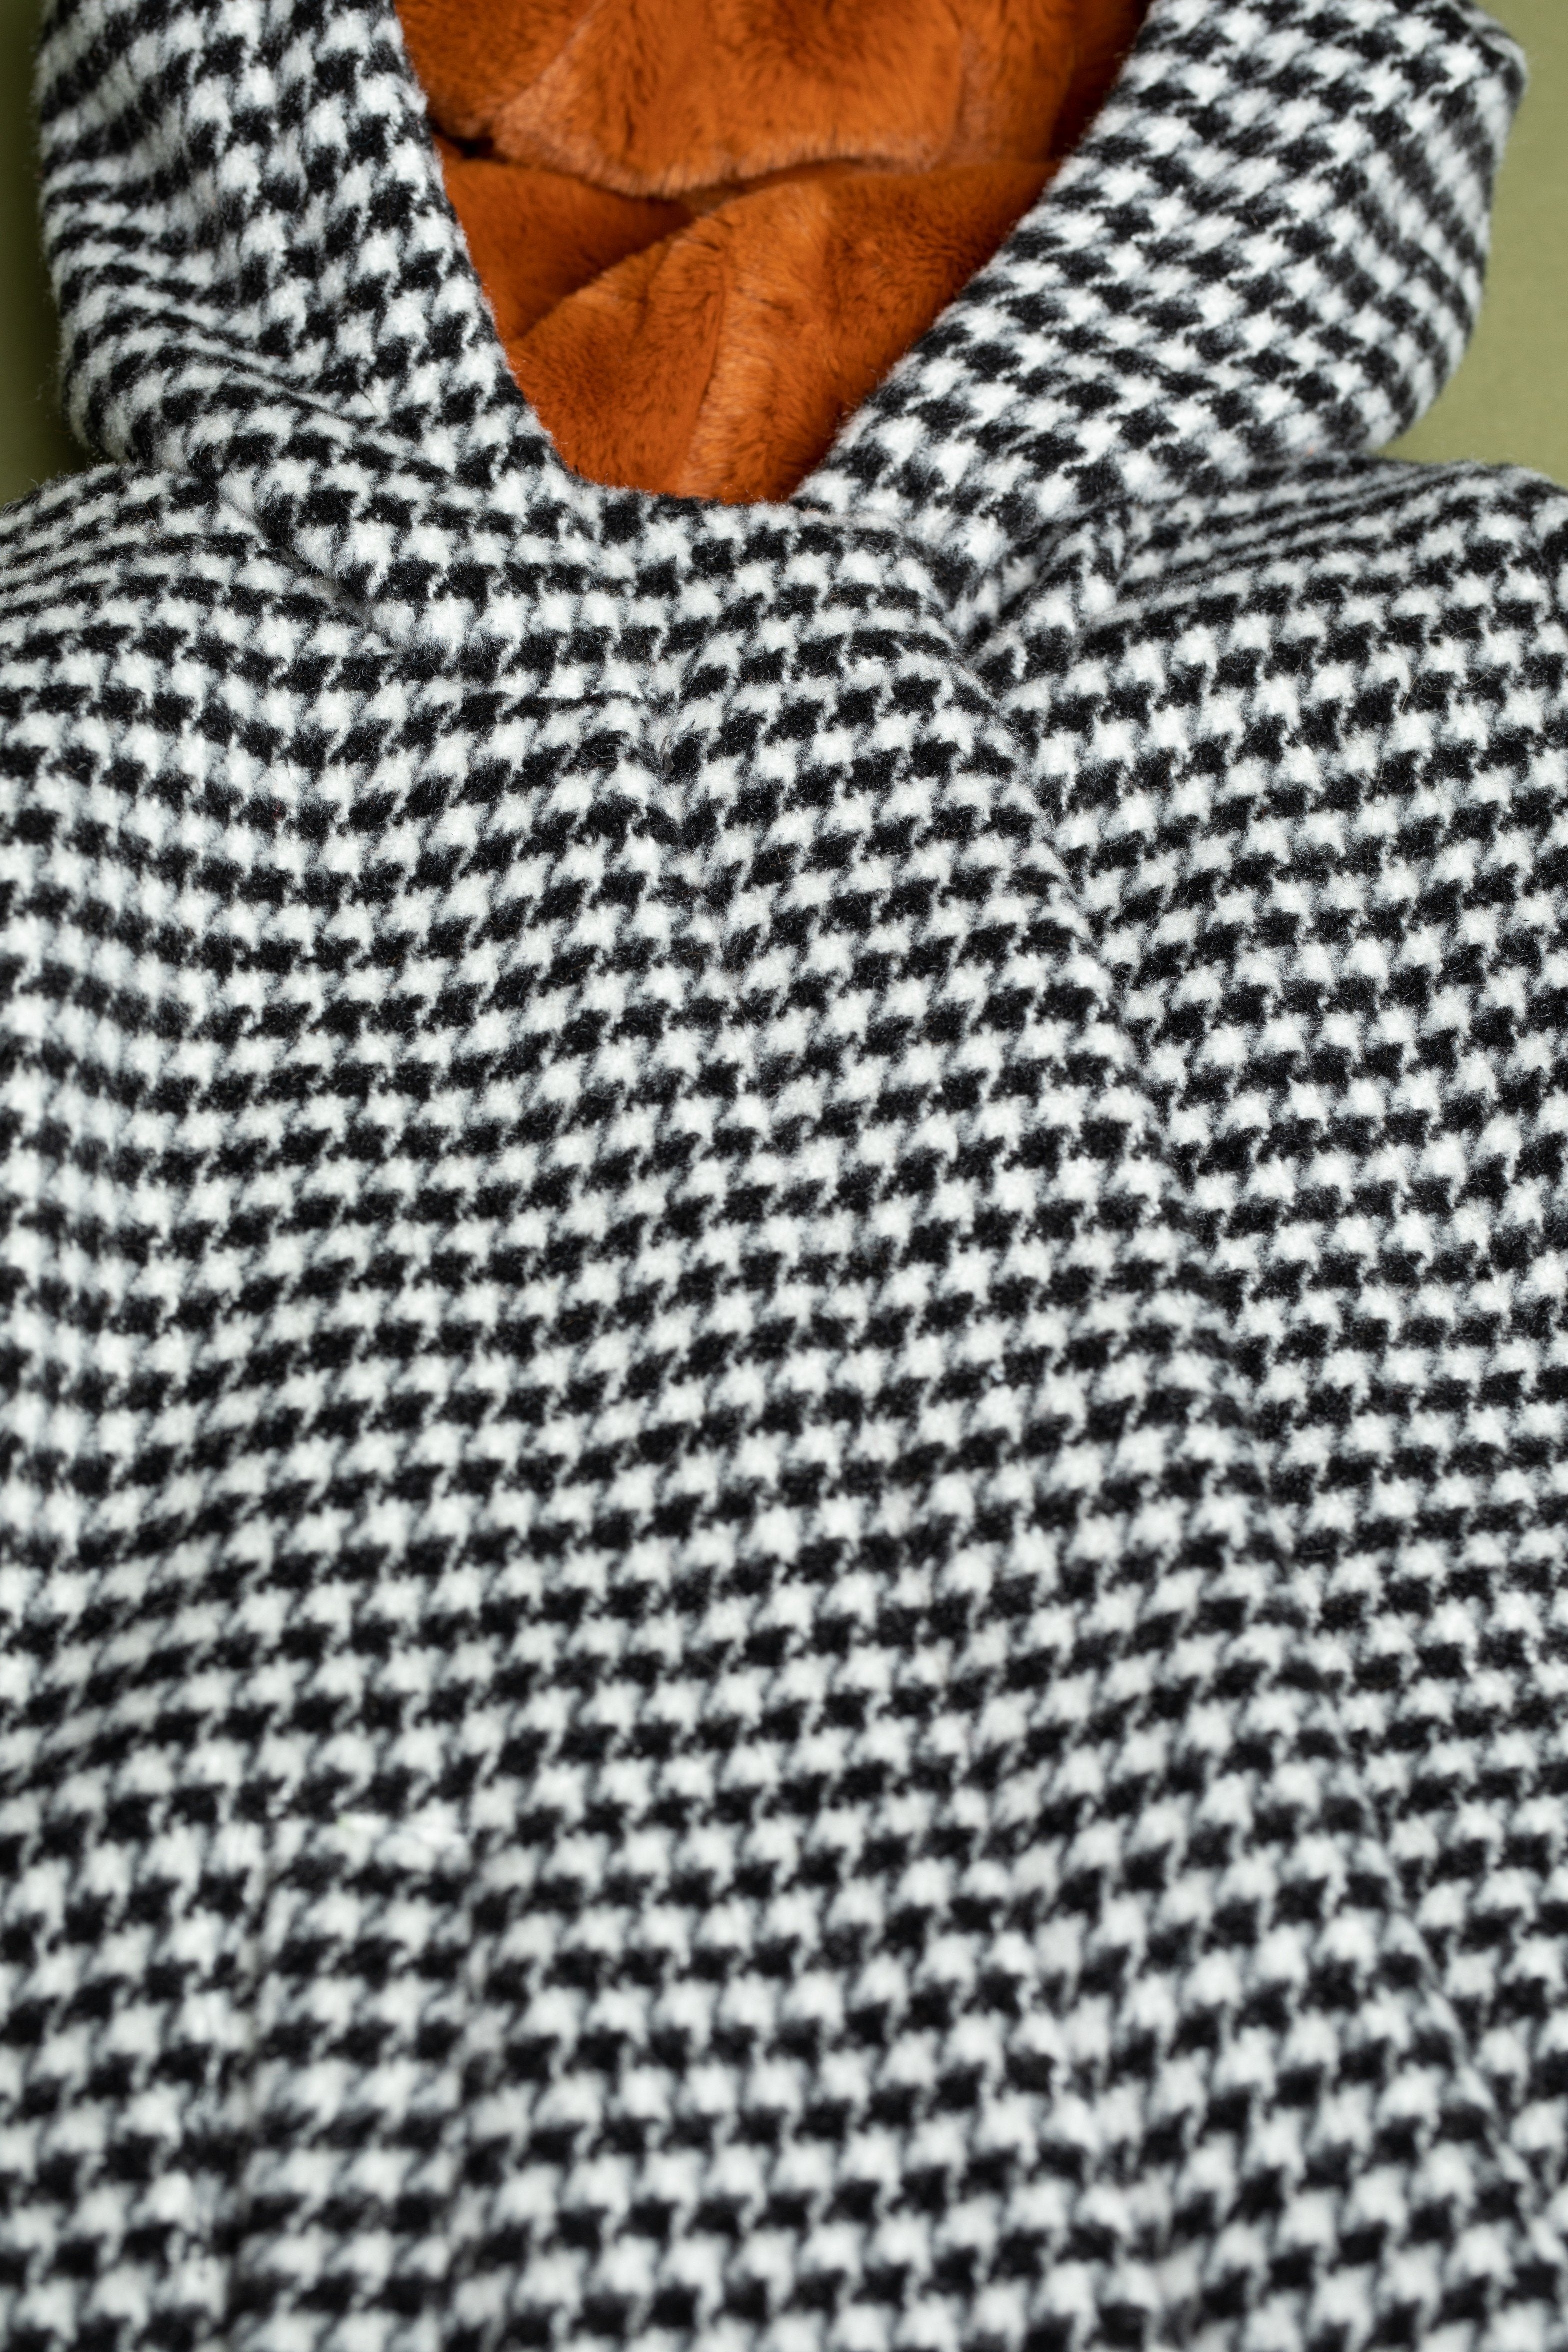 Meisjes Badras classic wooly hooded jacket van NoNo in de kleur Jet Black in maat 134-140.